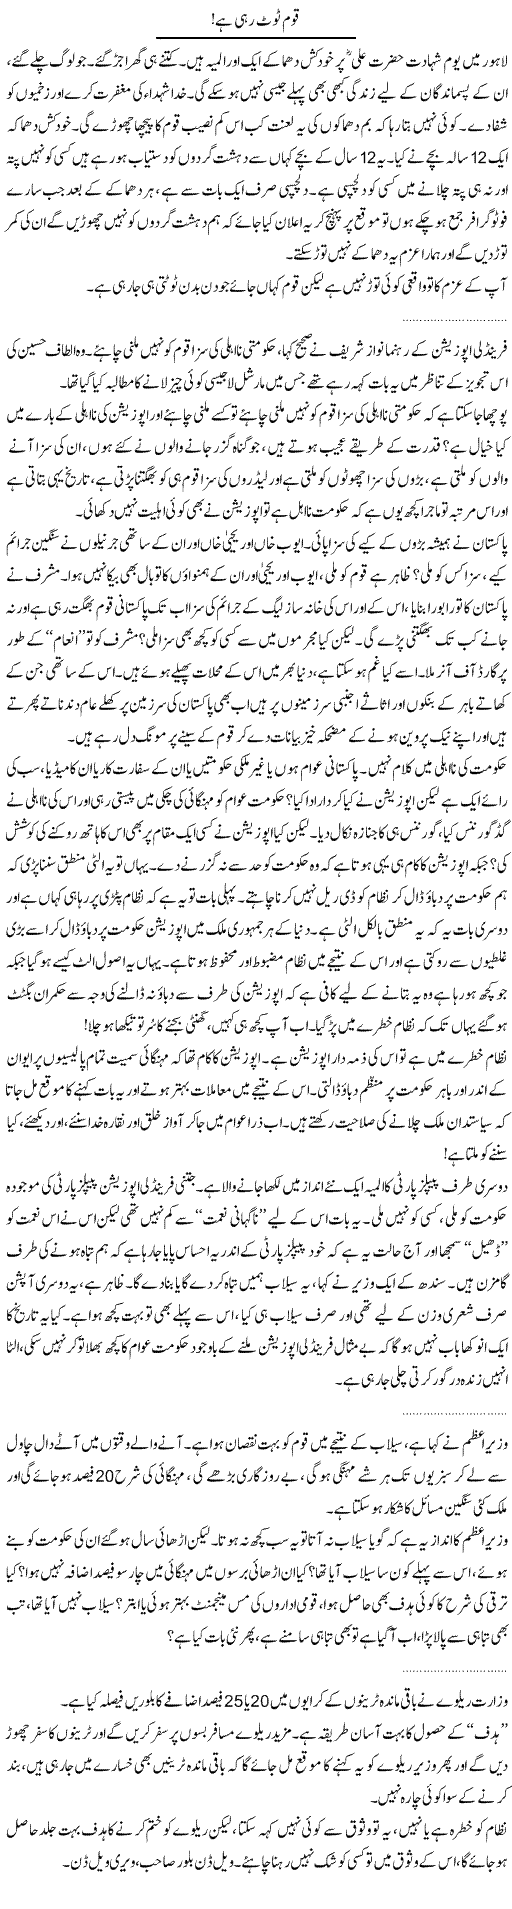 Nation Is Breaking Express Column Abdullah Tariq 3 September 2010